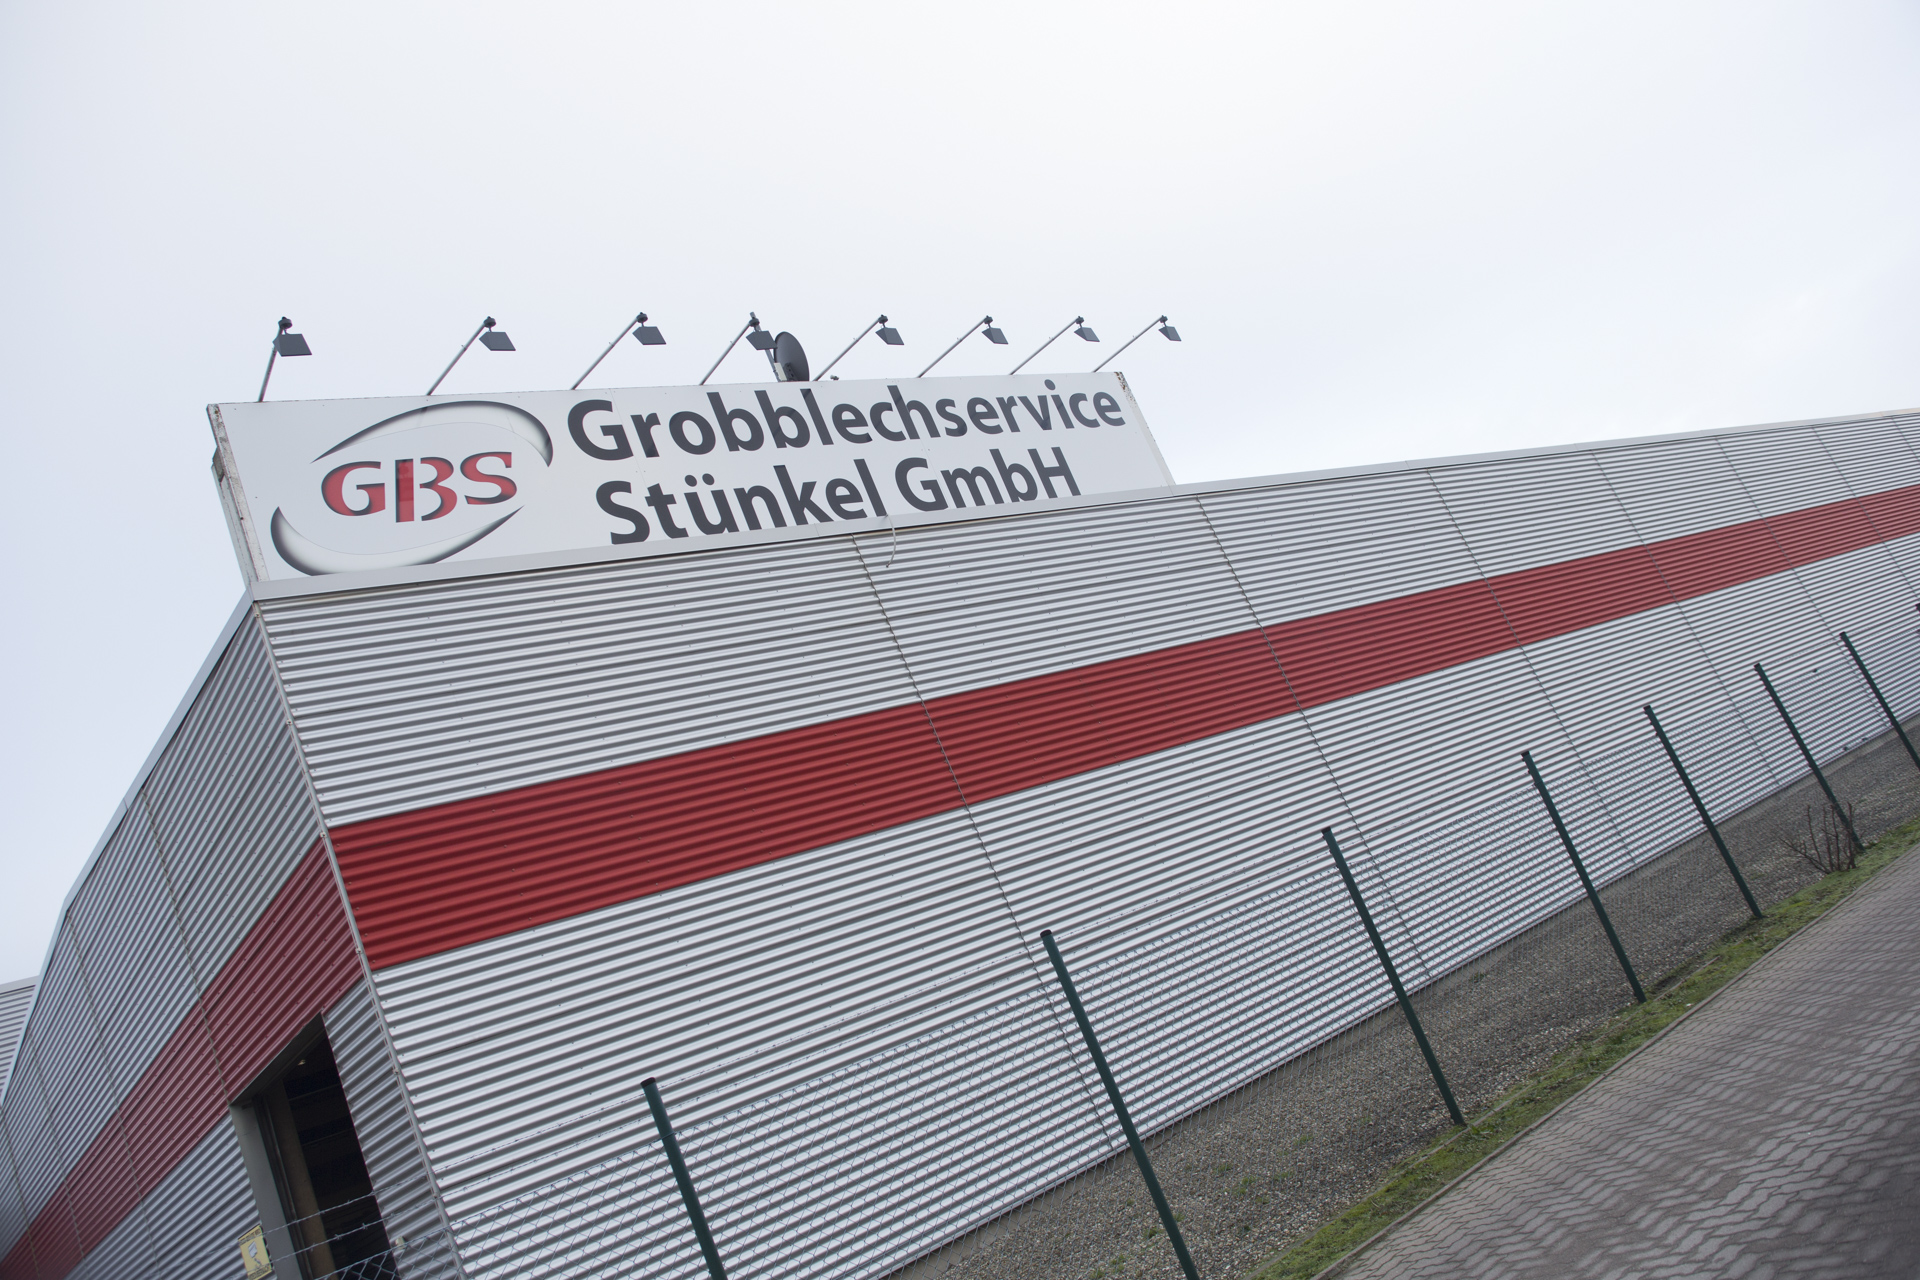 Grobblechservice Stünkel GmbH